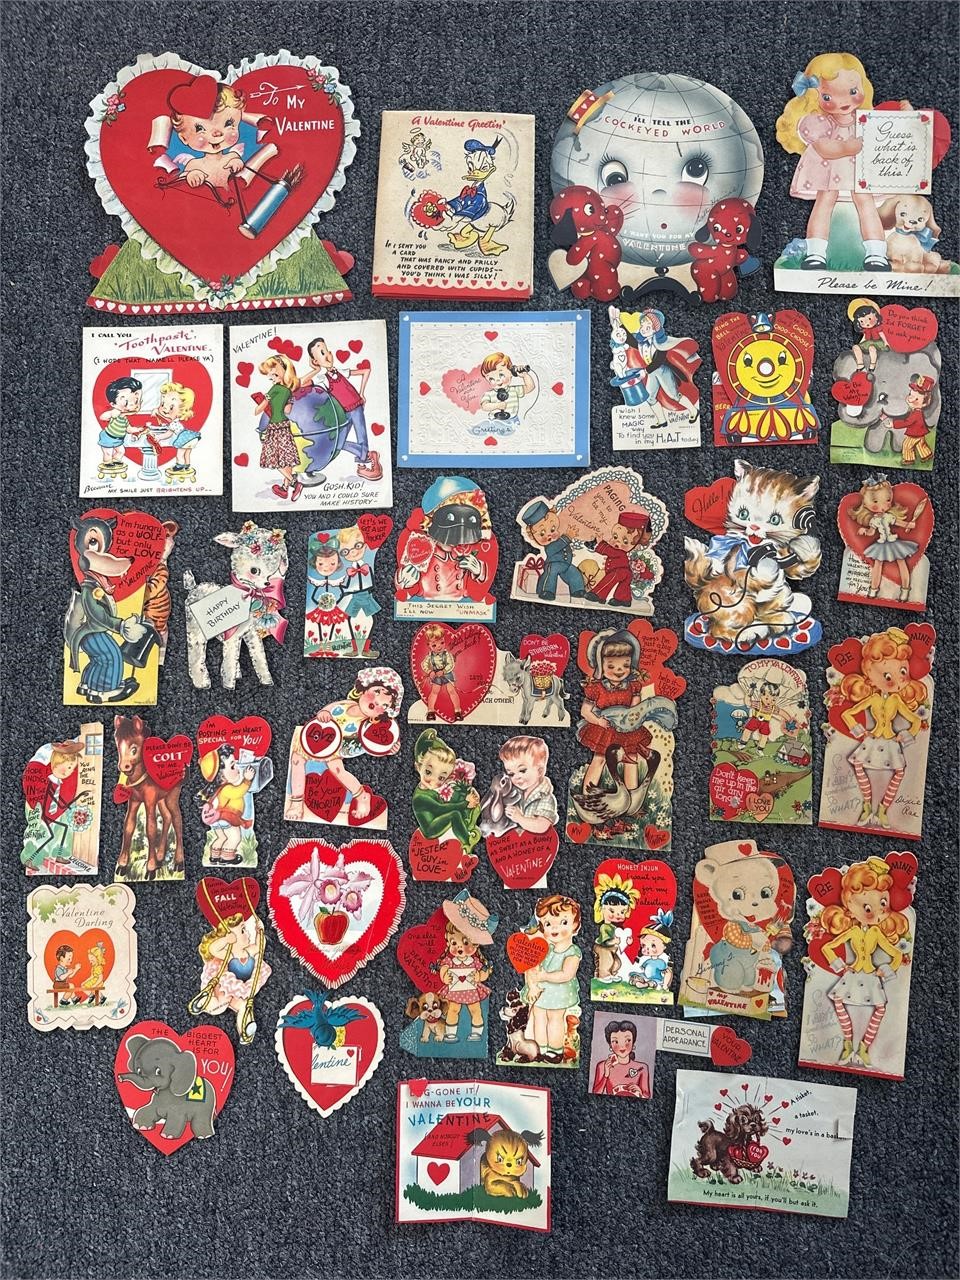 Vintage Valentine cards